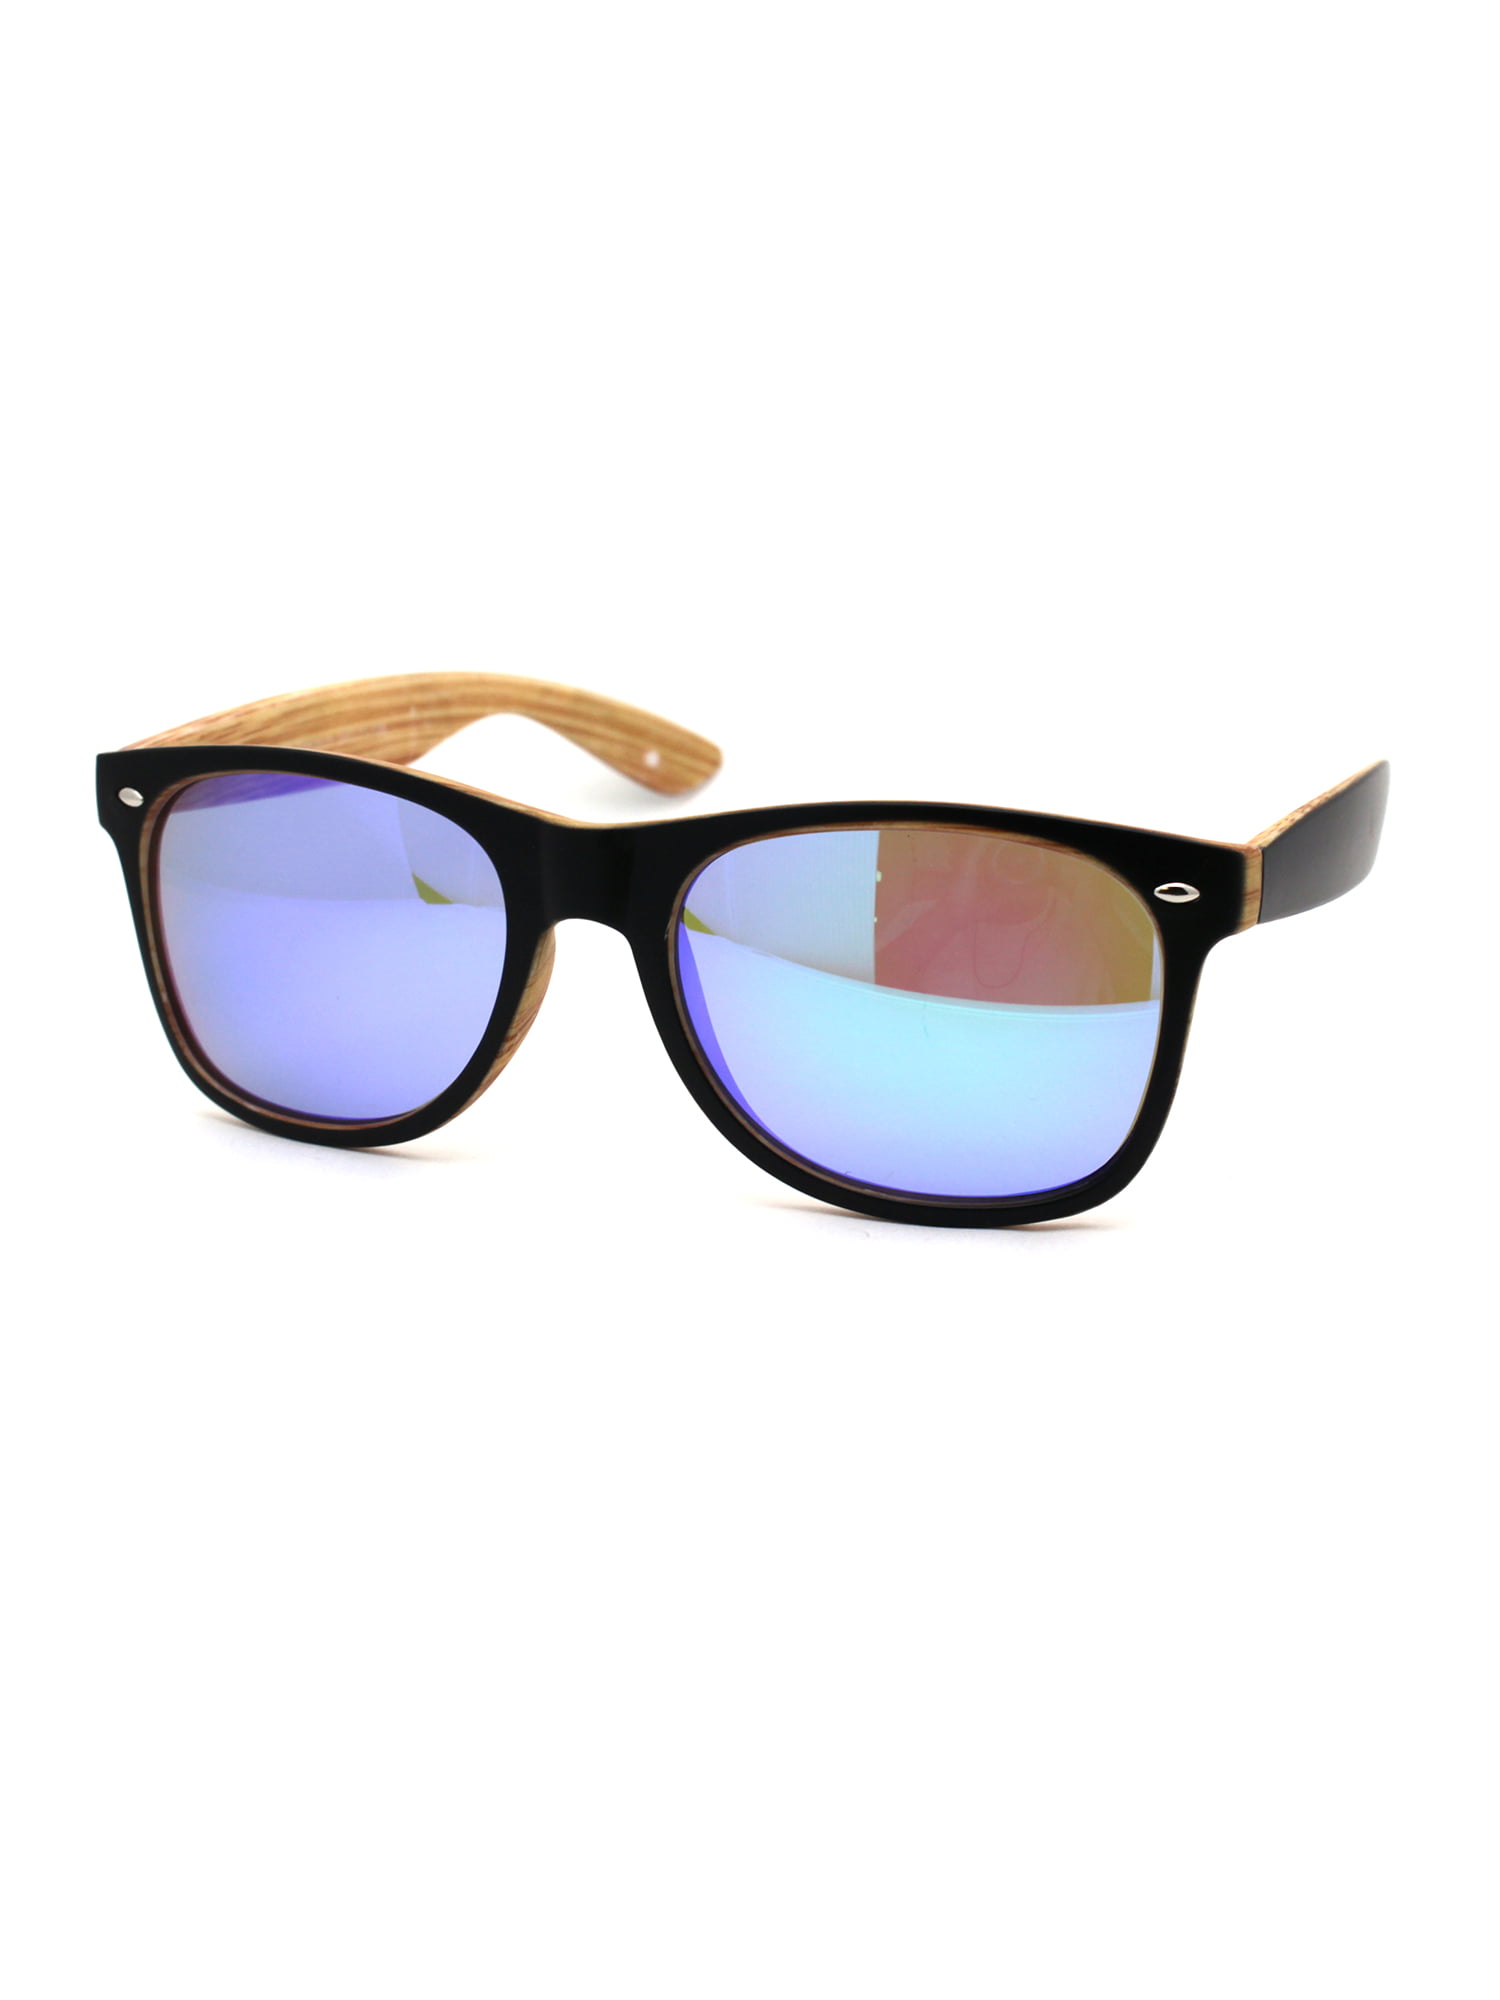 Black Frame Sunglasses Green Spectrum Lens Unisex Mens Womens Retro 100% UV400 